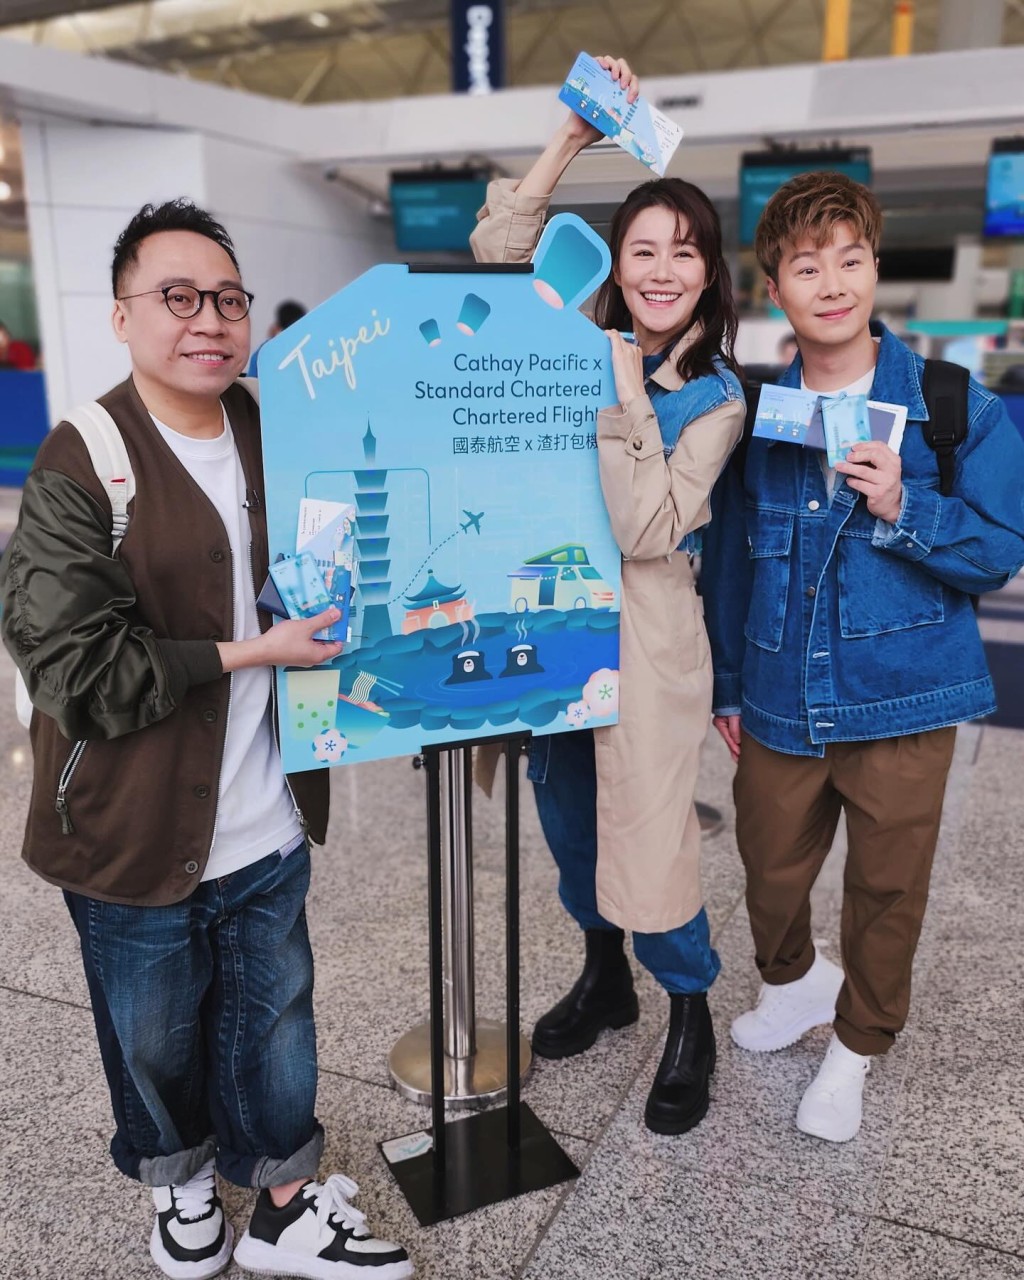 黄翠如于IG分享照片的同时亦留言：「好新鲜的组合，旅游节目MODE，来了。」